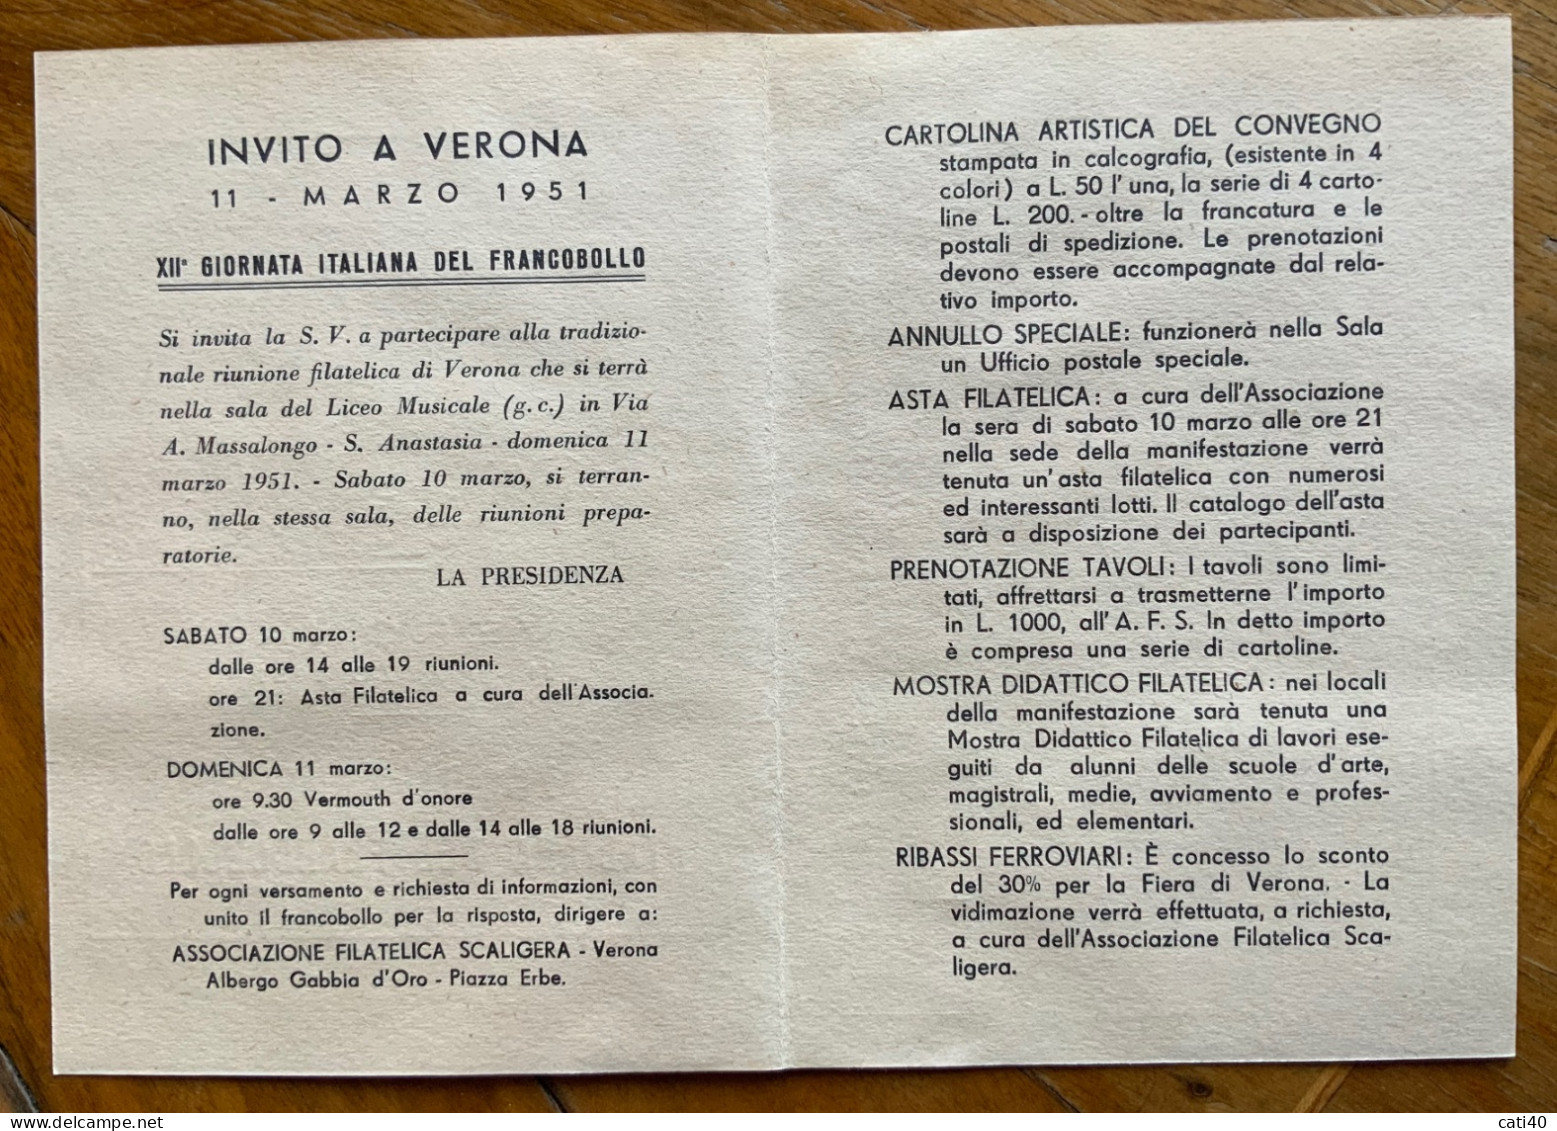 VERONA 1951 - XII GIORNATA ITALIANA DEL FRANCOBOLLO - CARTOLINA PROGRAMMA - Manifestations